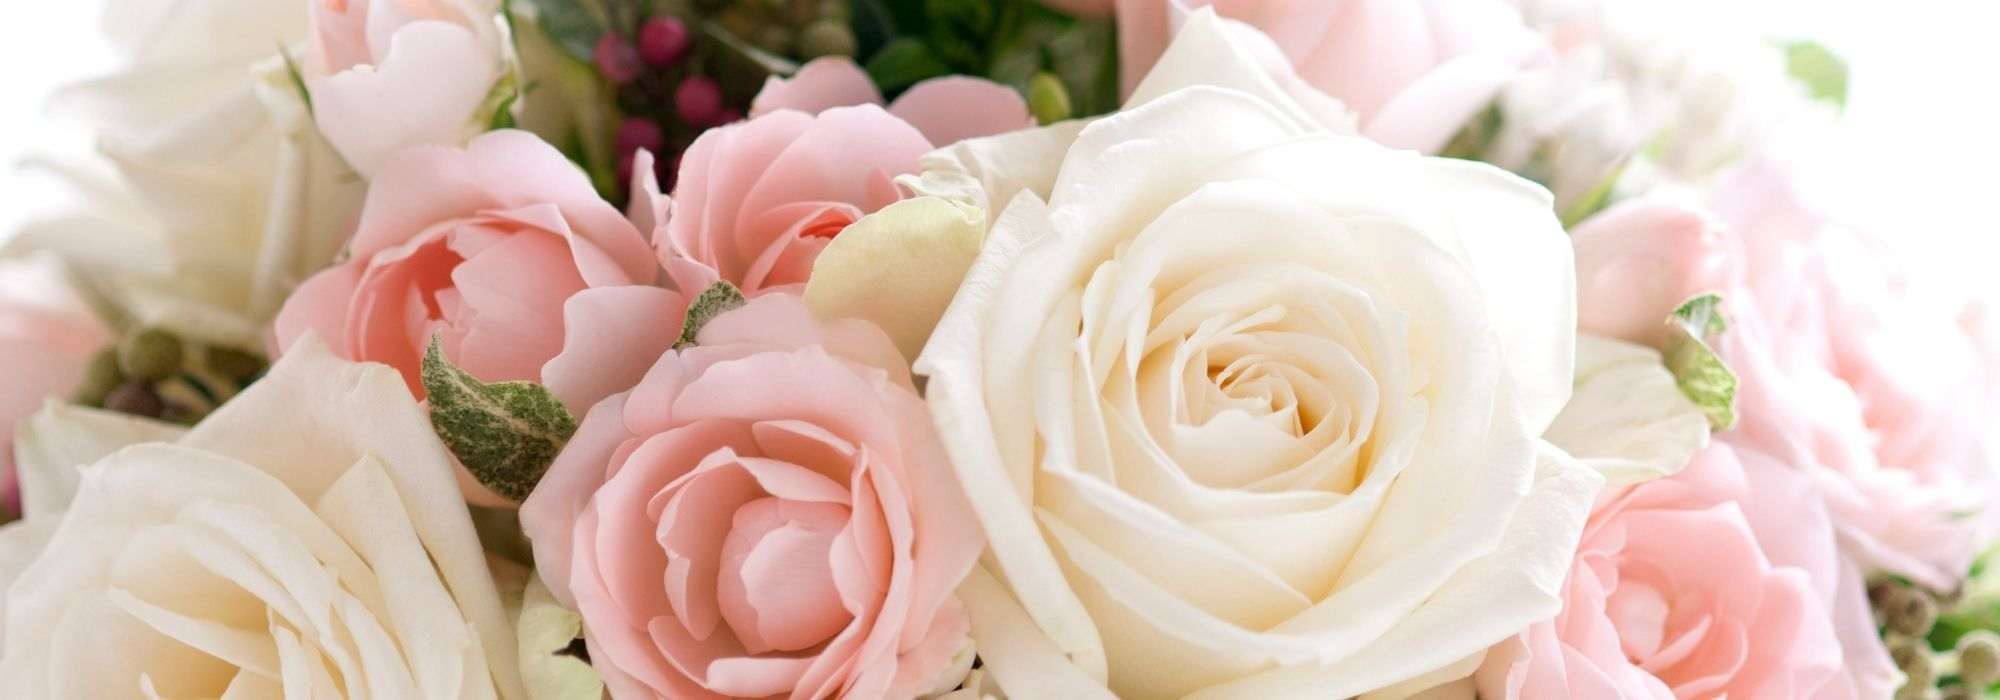 10 conseils pour réaliser de beaux bouquets de roses